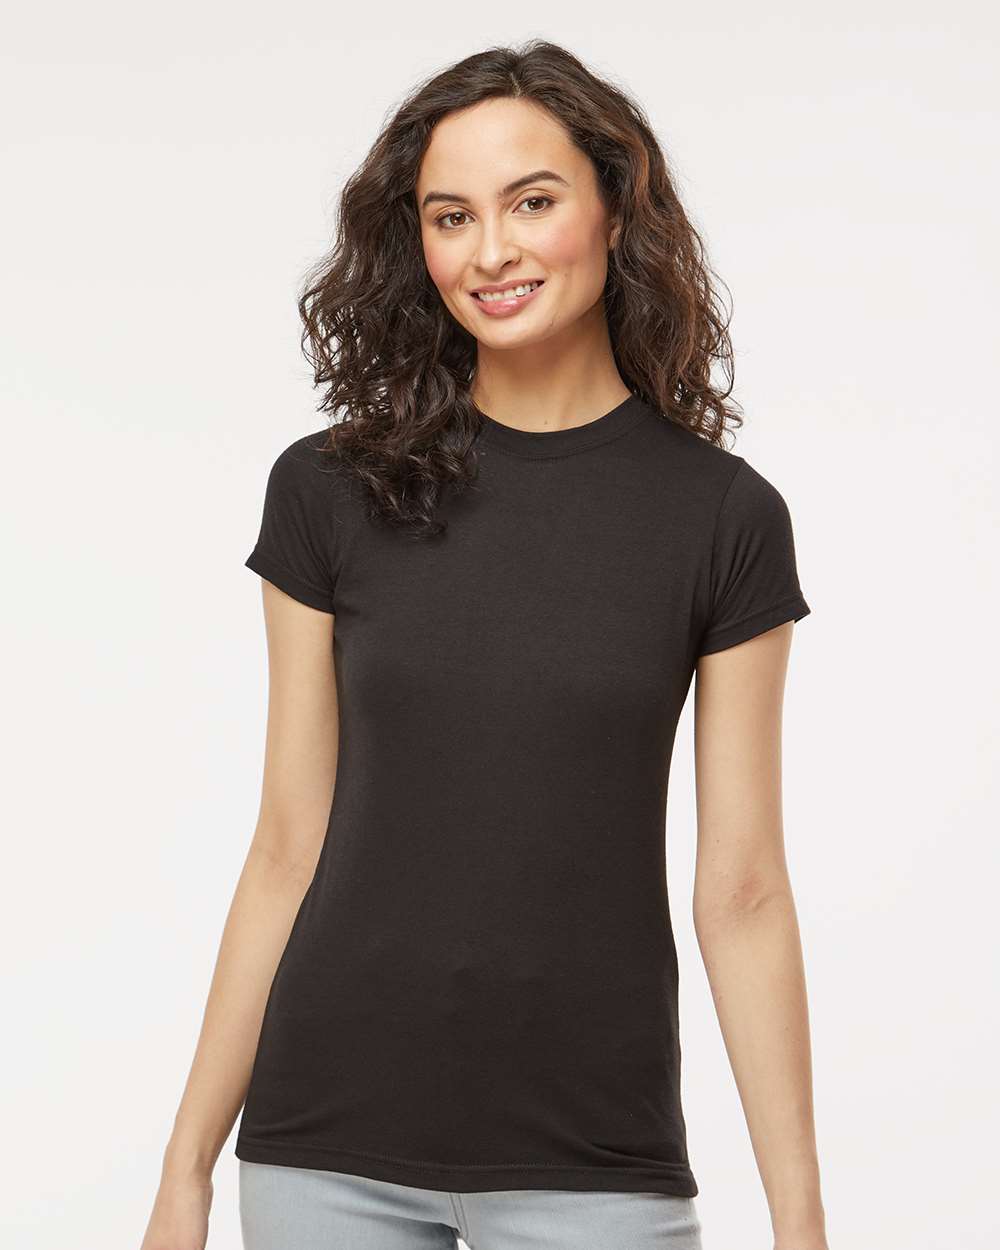 M&O Women’s Deluxe Blend T-Shirt #3540 Black